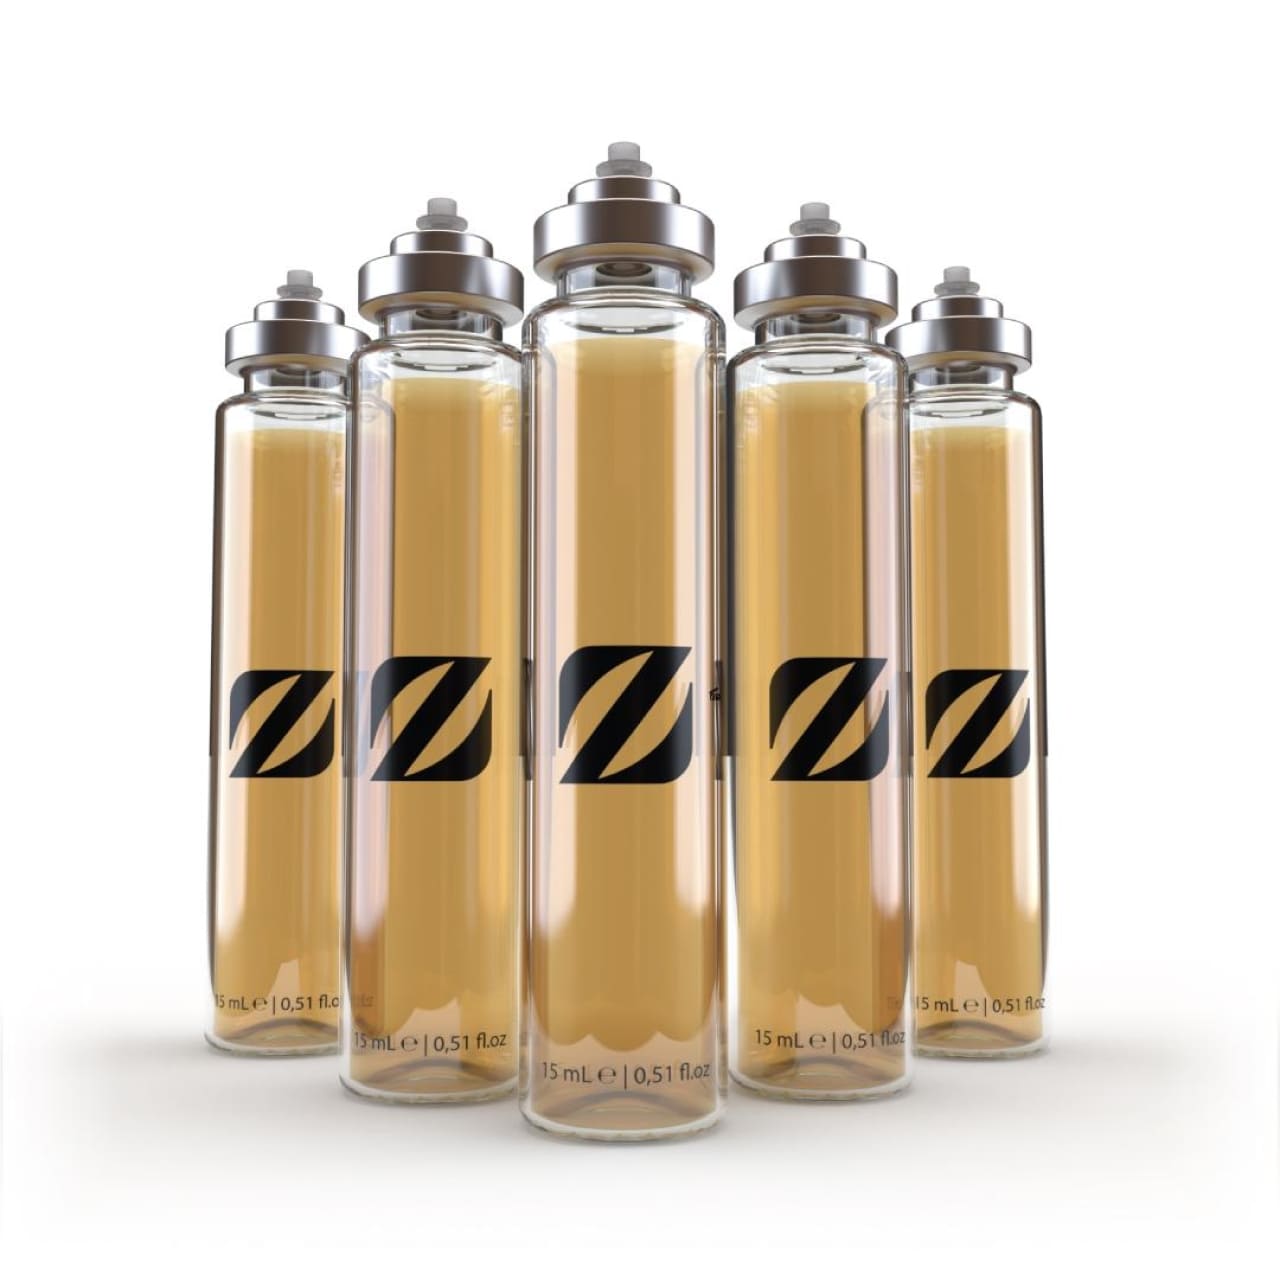 Chogan Parfum T001x5 hervorgehobene Noten von Zitrus, Lavendel und Sandelholz